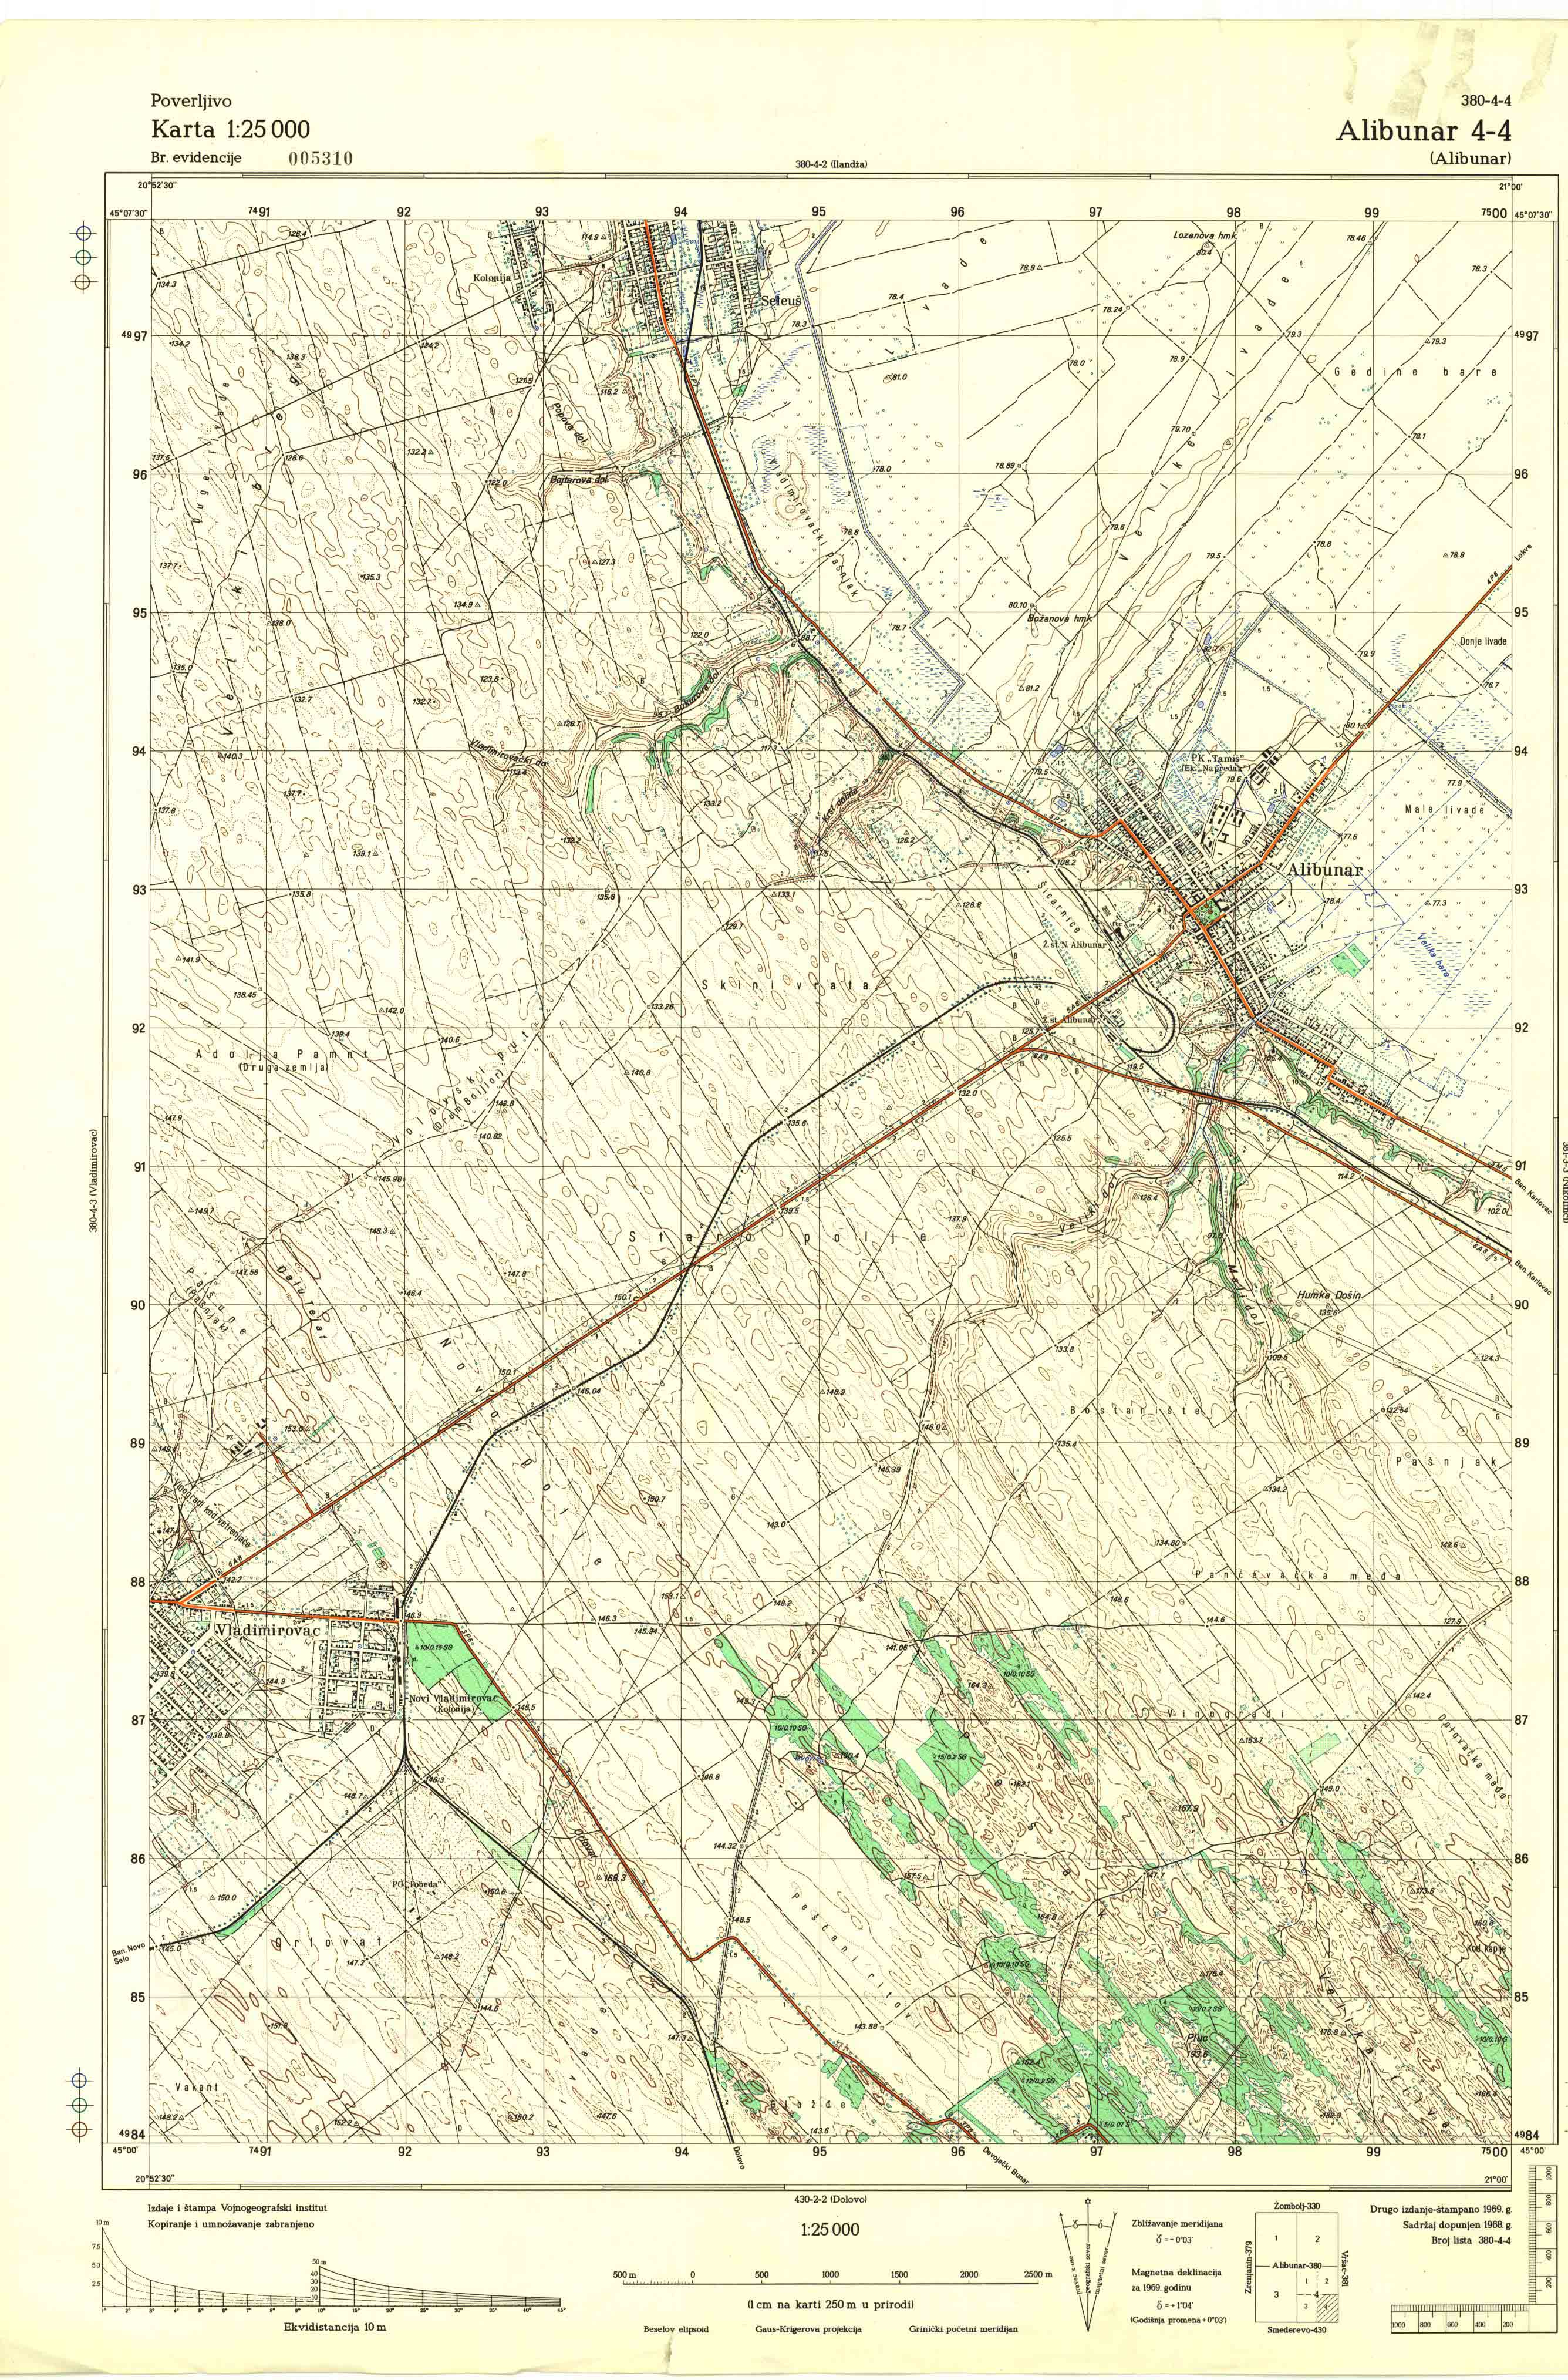  topografska karta srbije 25000 JNA  Alibunar